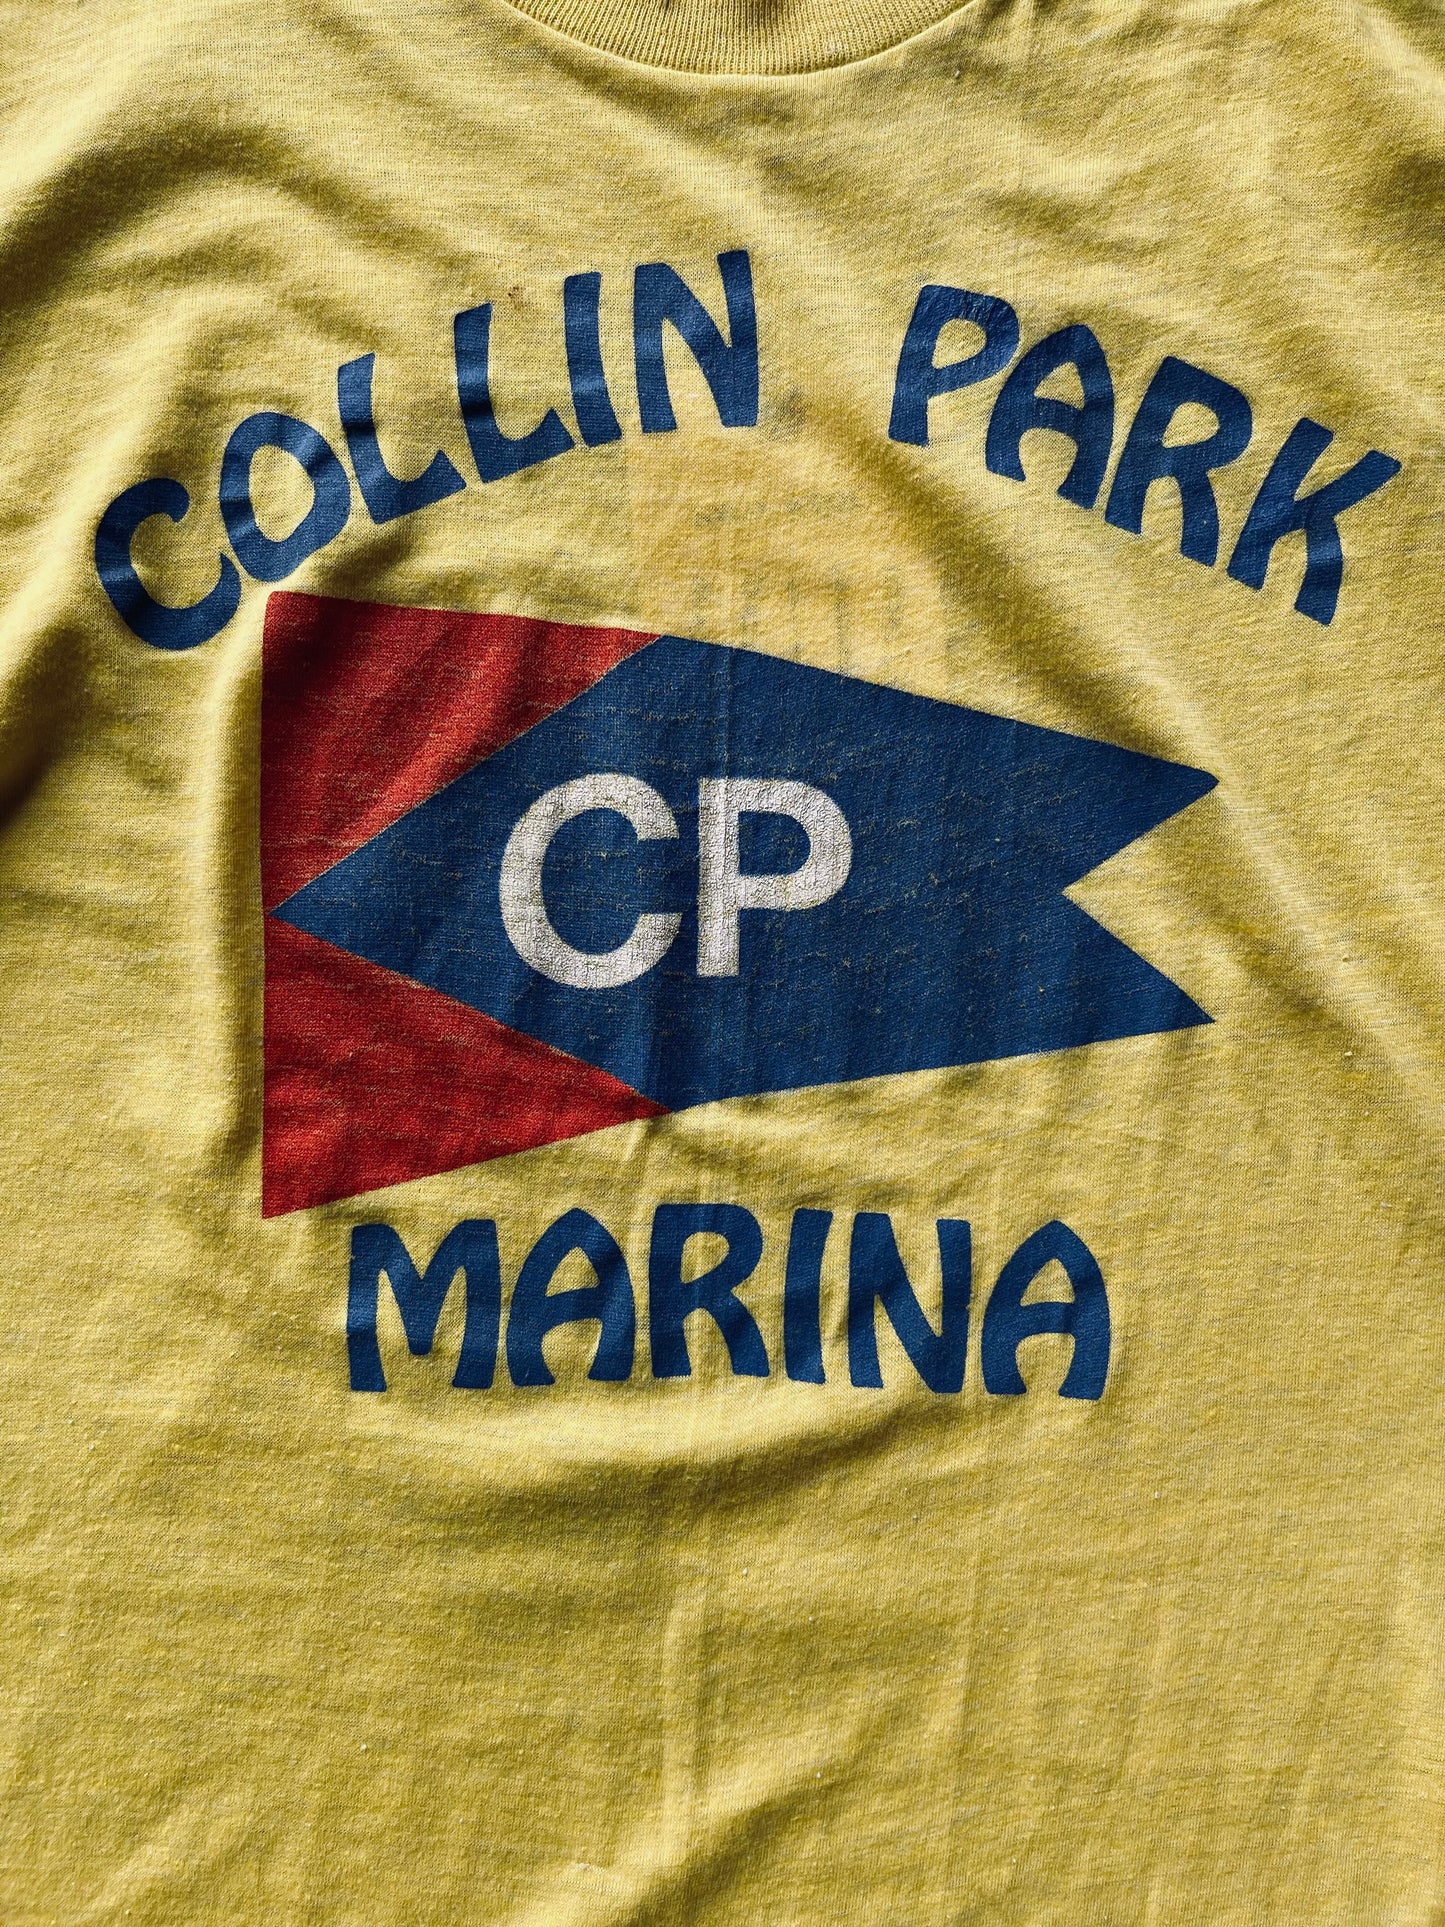 Vintage Collin Park Marina Tee | Medium